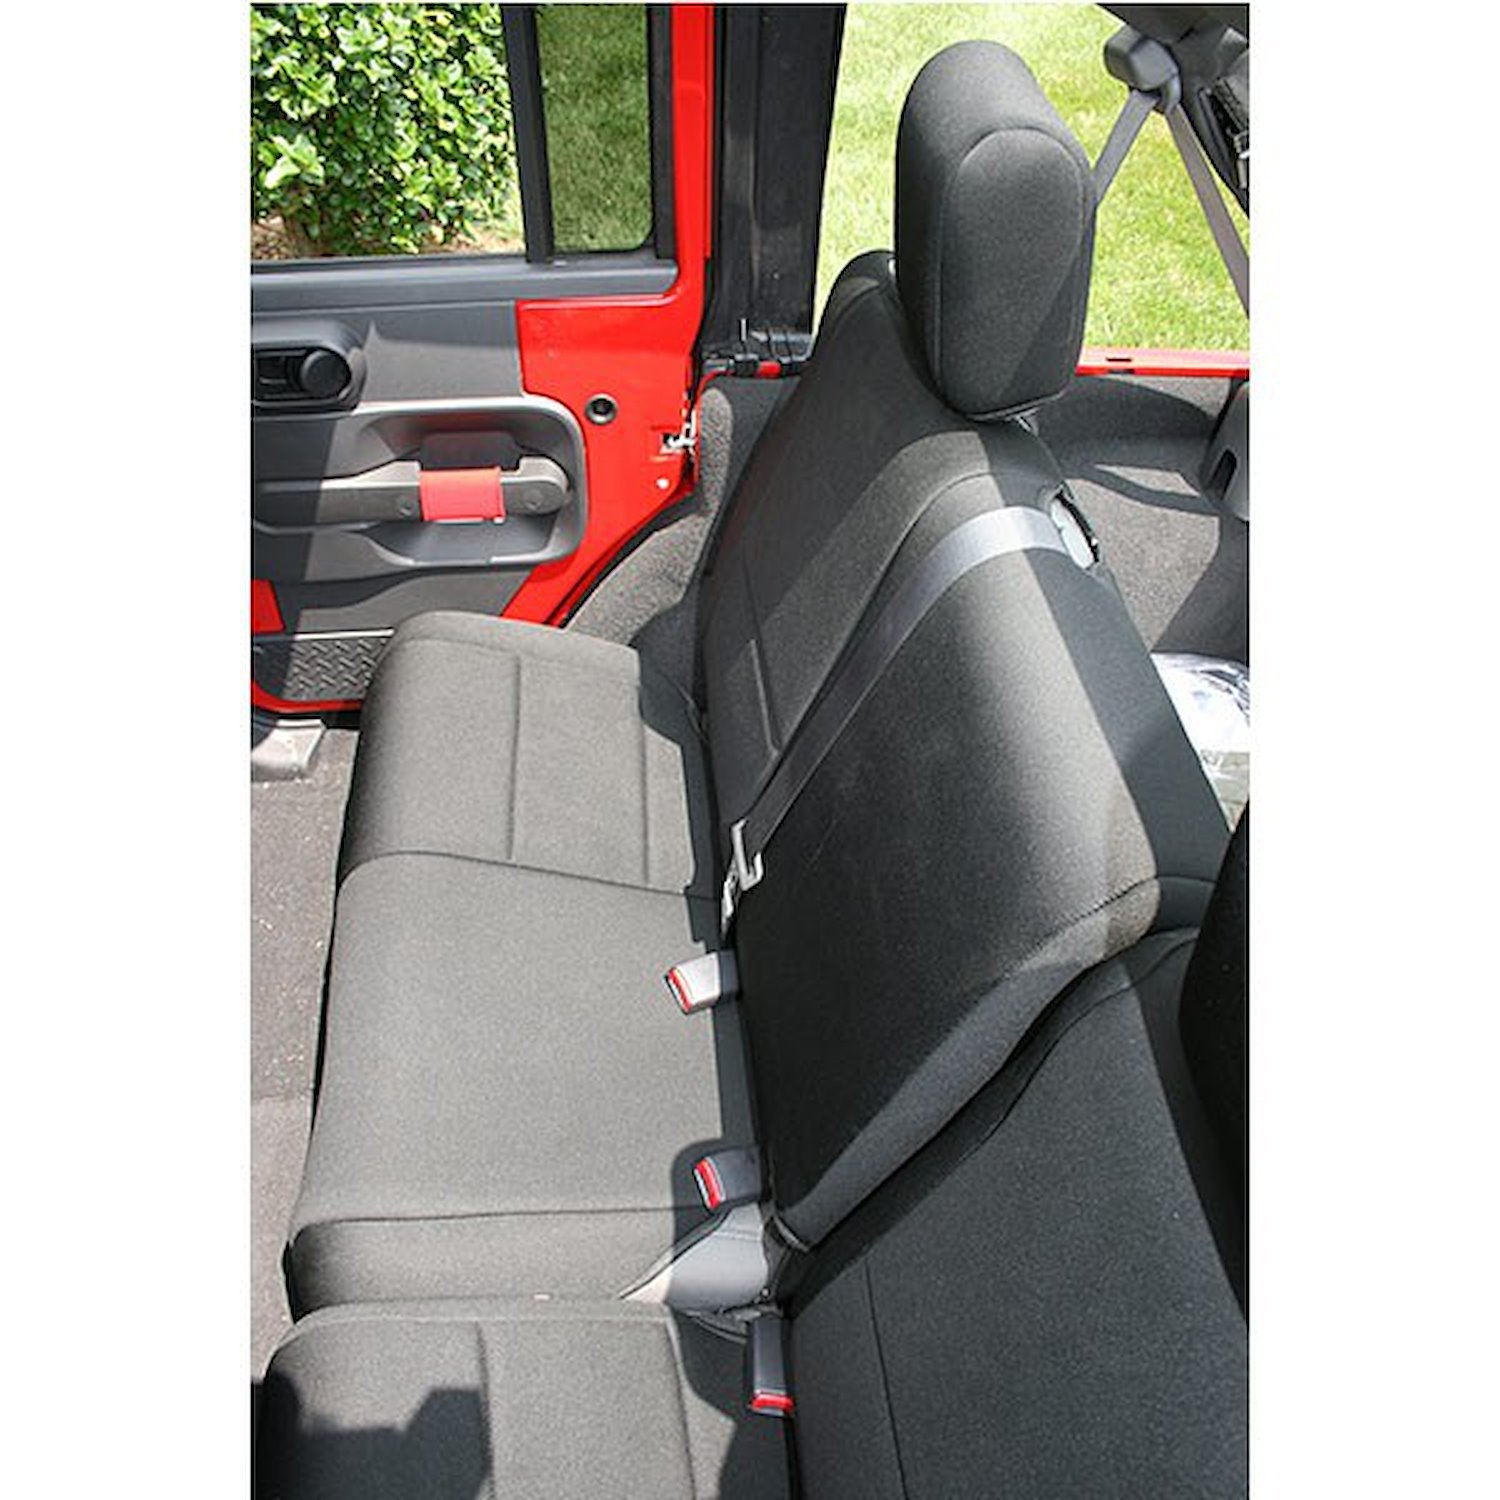 Rear Black Neoprene Seat Cover for 2007-2018 Jeep Wrangler JK